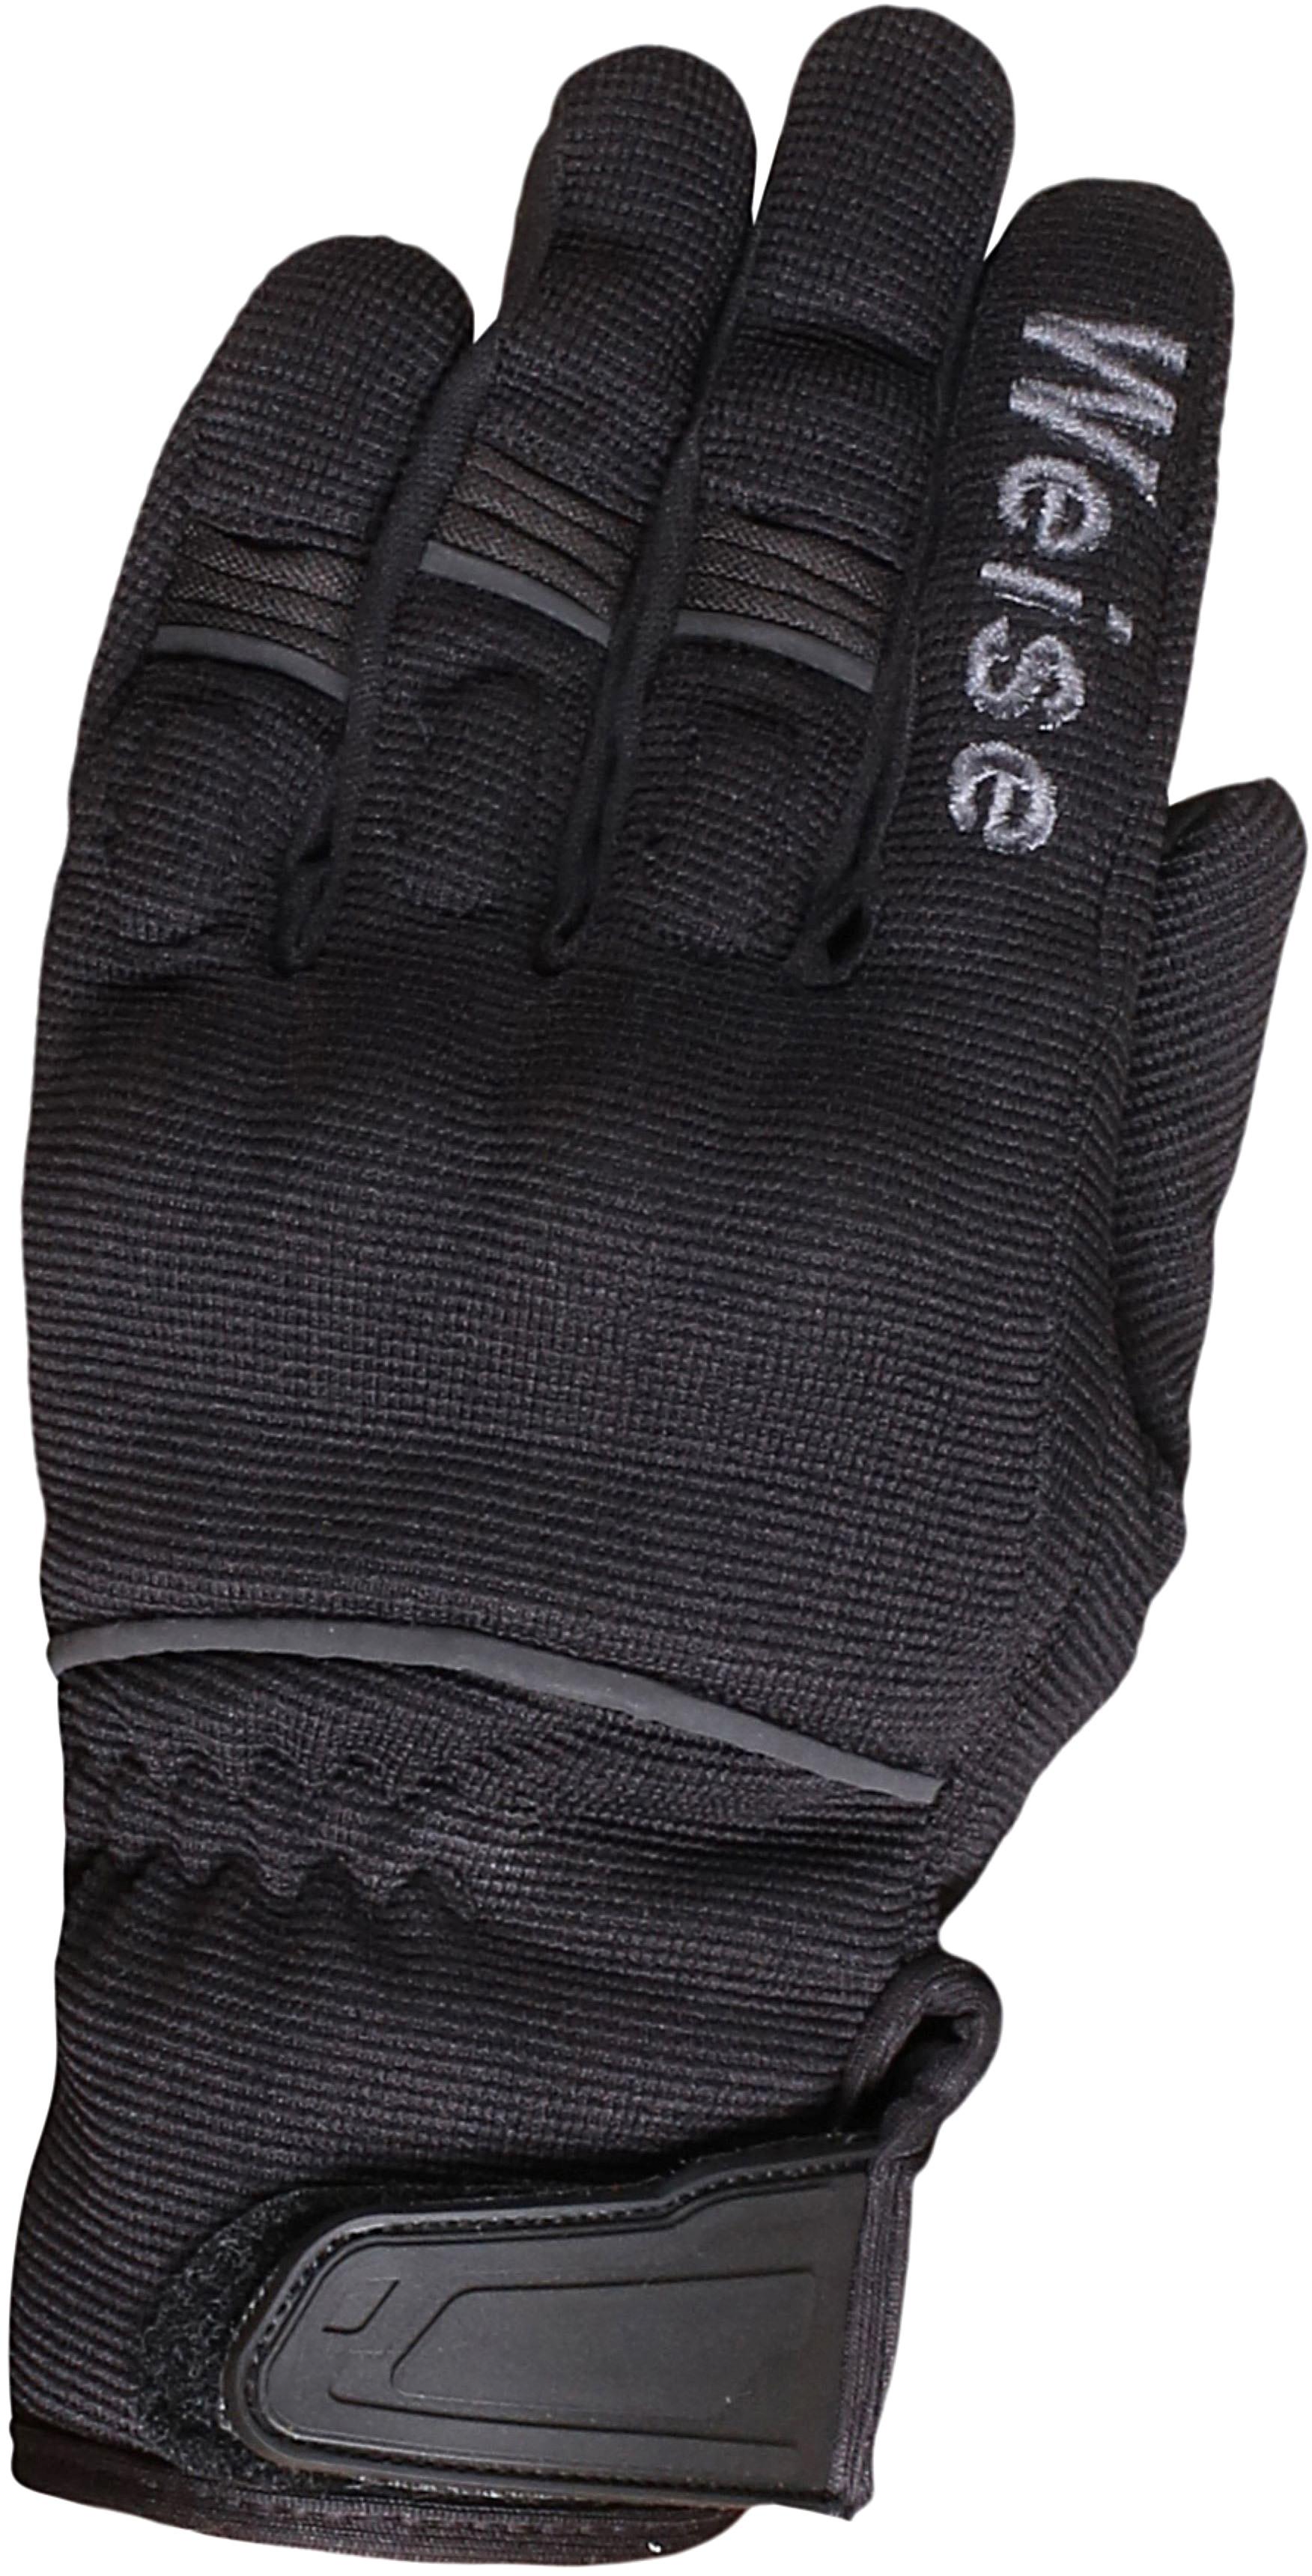 Weise Motorcycle Pit Gloves - Black/Gunmetal, M